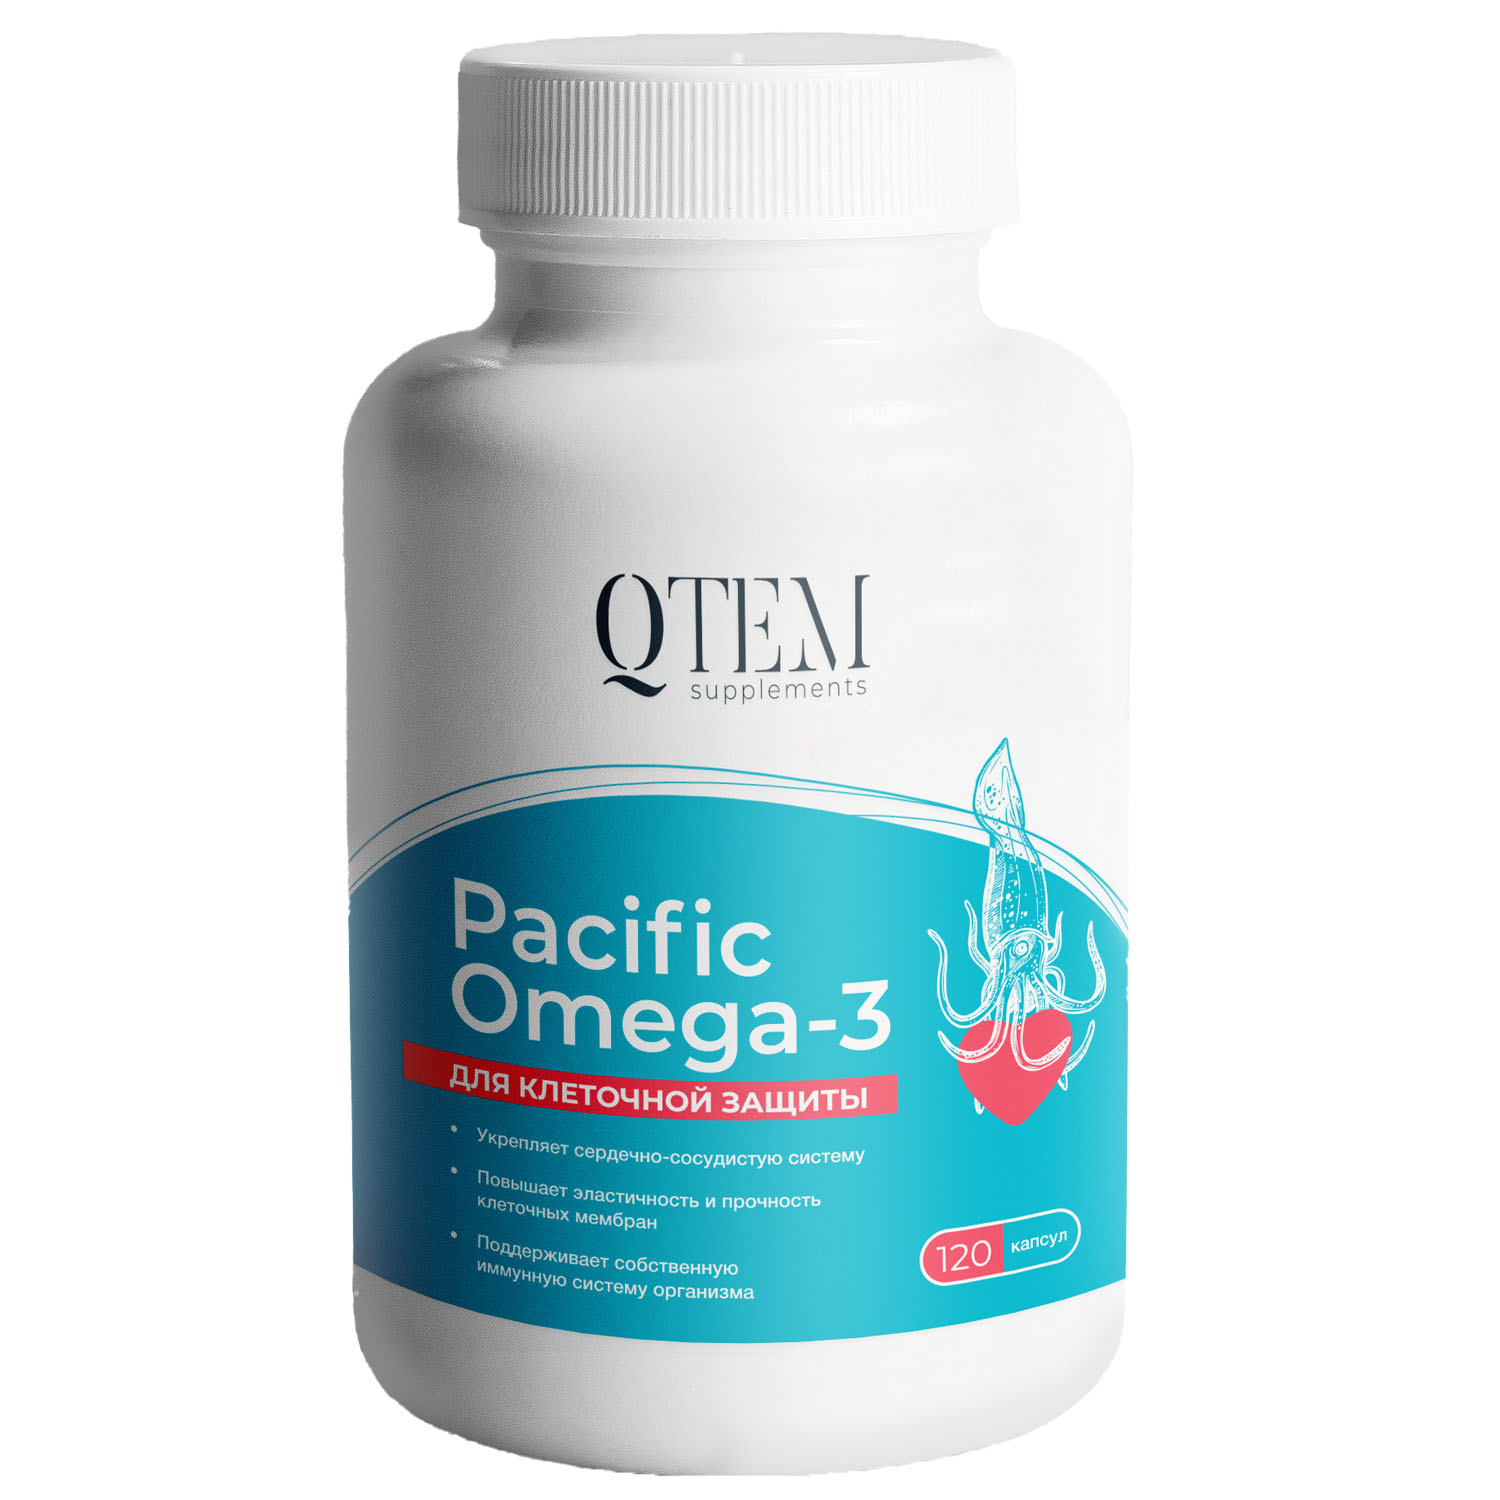 Кьютэм Комплекс для клеточной защиты Pacific Omega 3, 120 капсул (Qtem, Supplement) фото 0